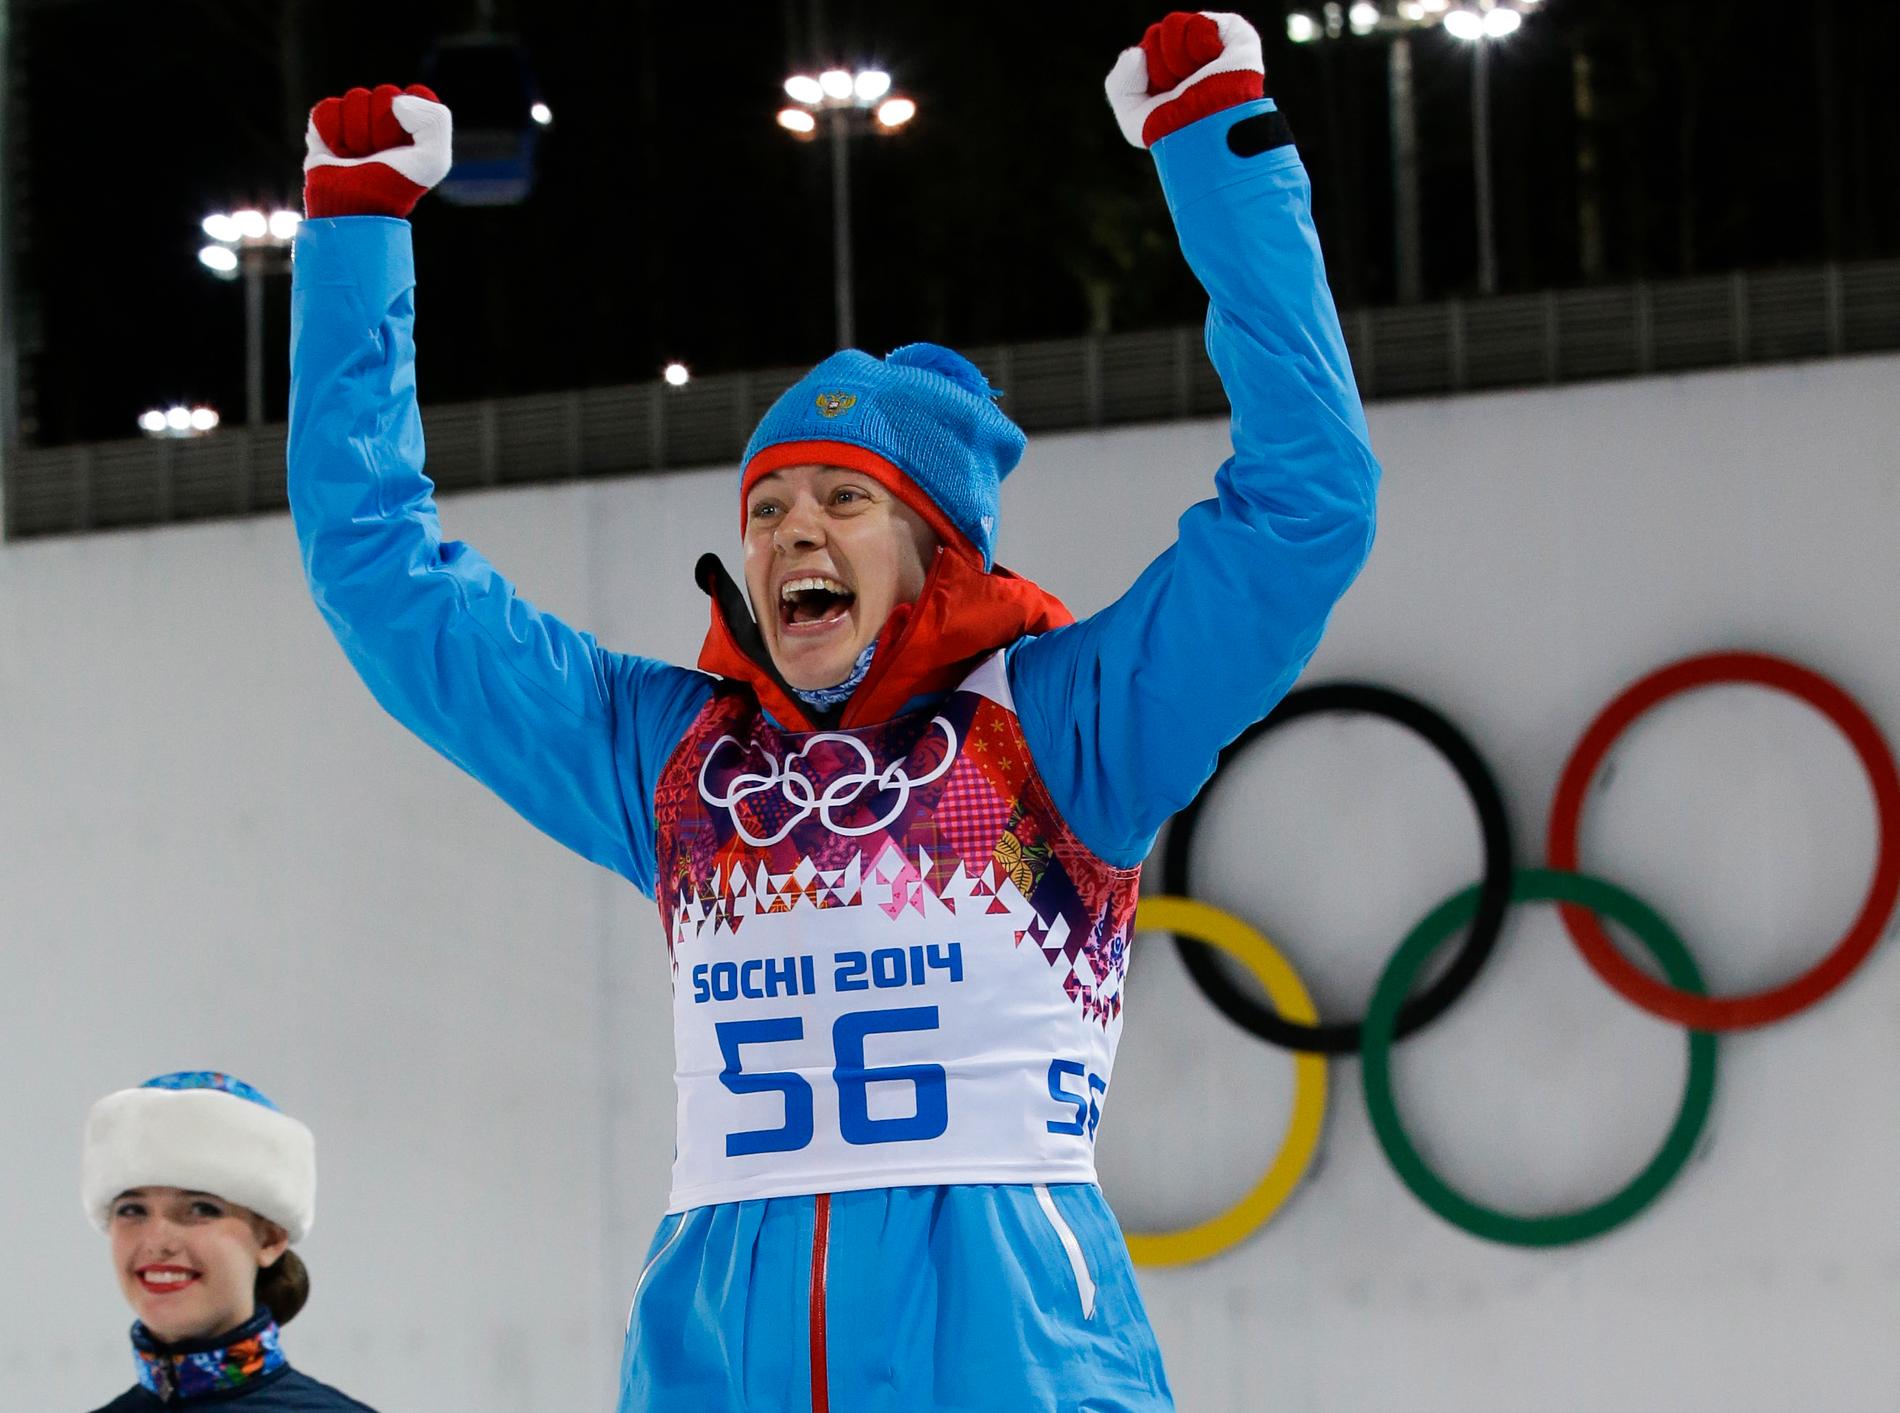 Ryska skidskytten Olga Viluchina har anledning att jubla igen, då hon friats av Cas och fått tillbaka sitt OS-silver från 2014. Arkivbild.